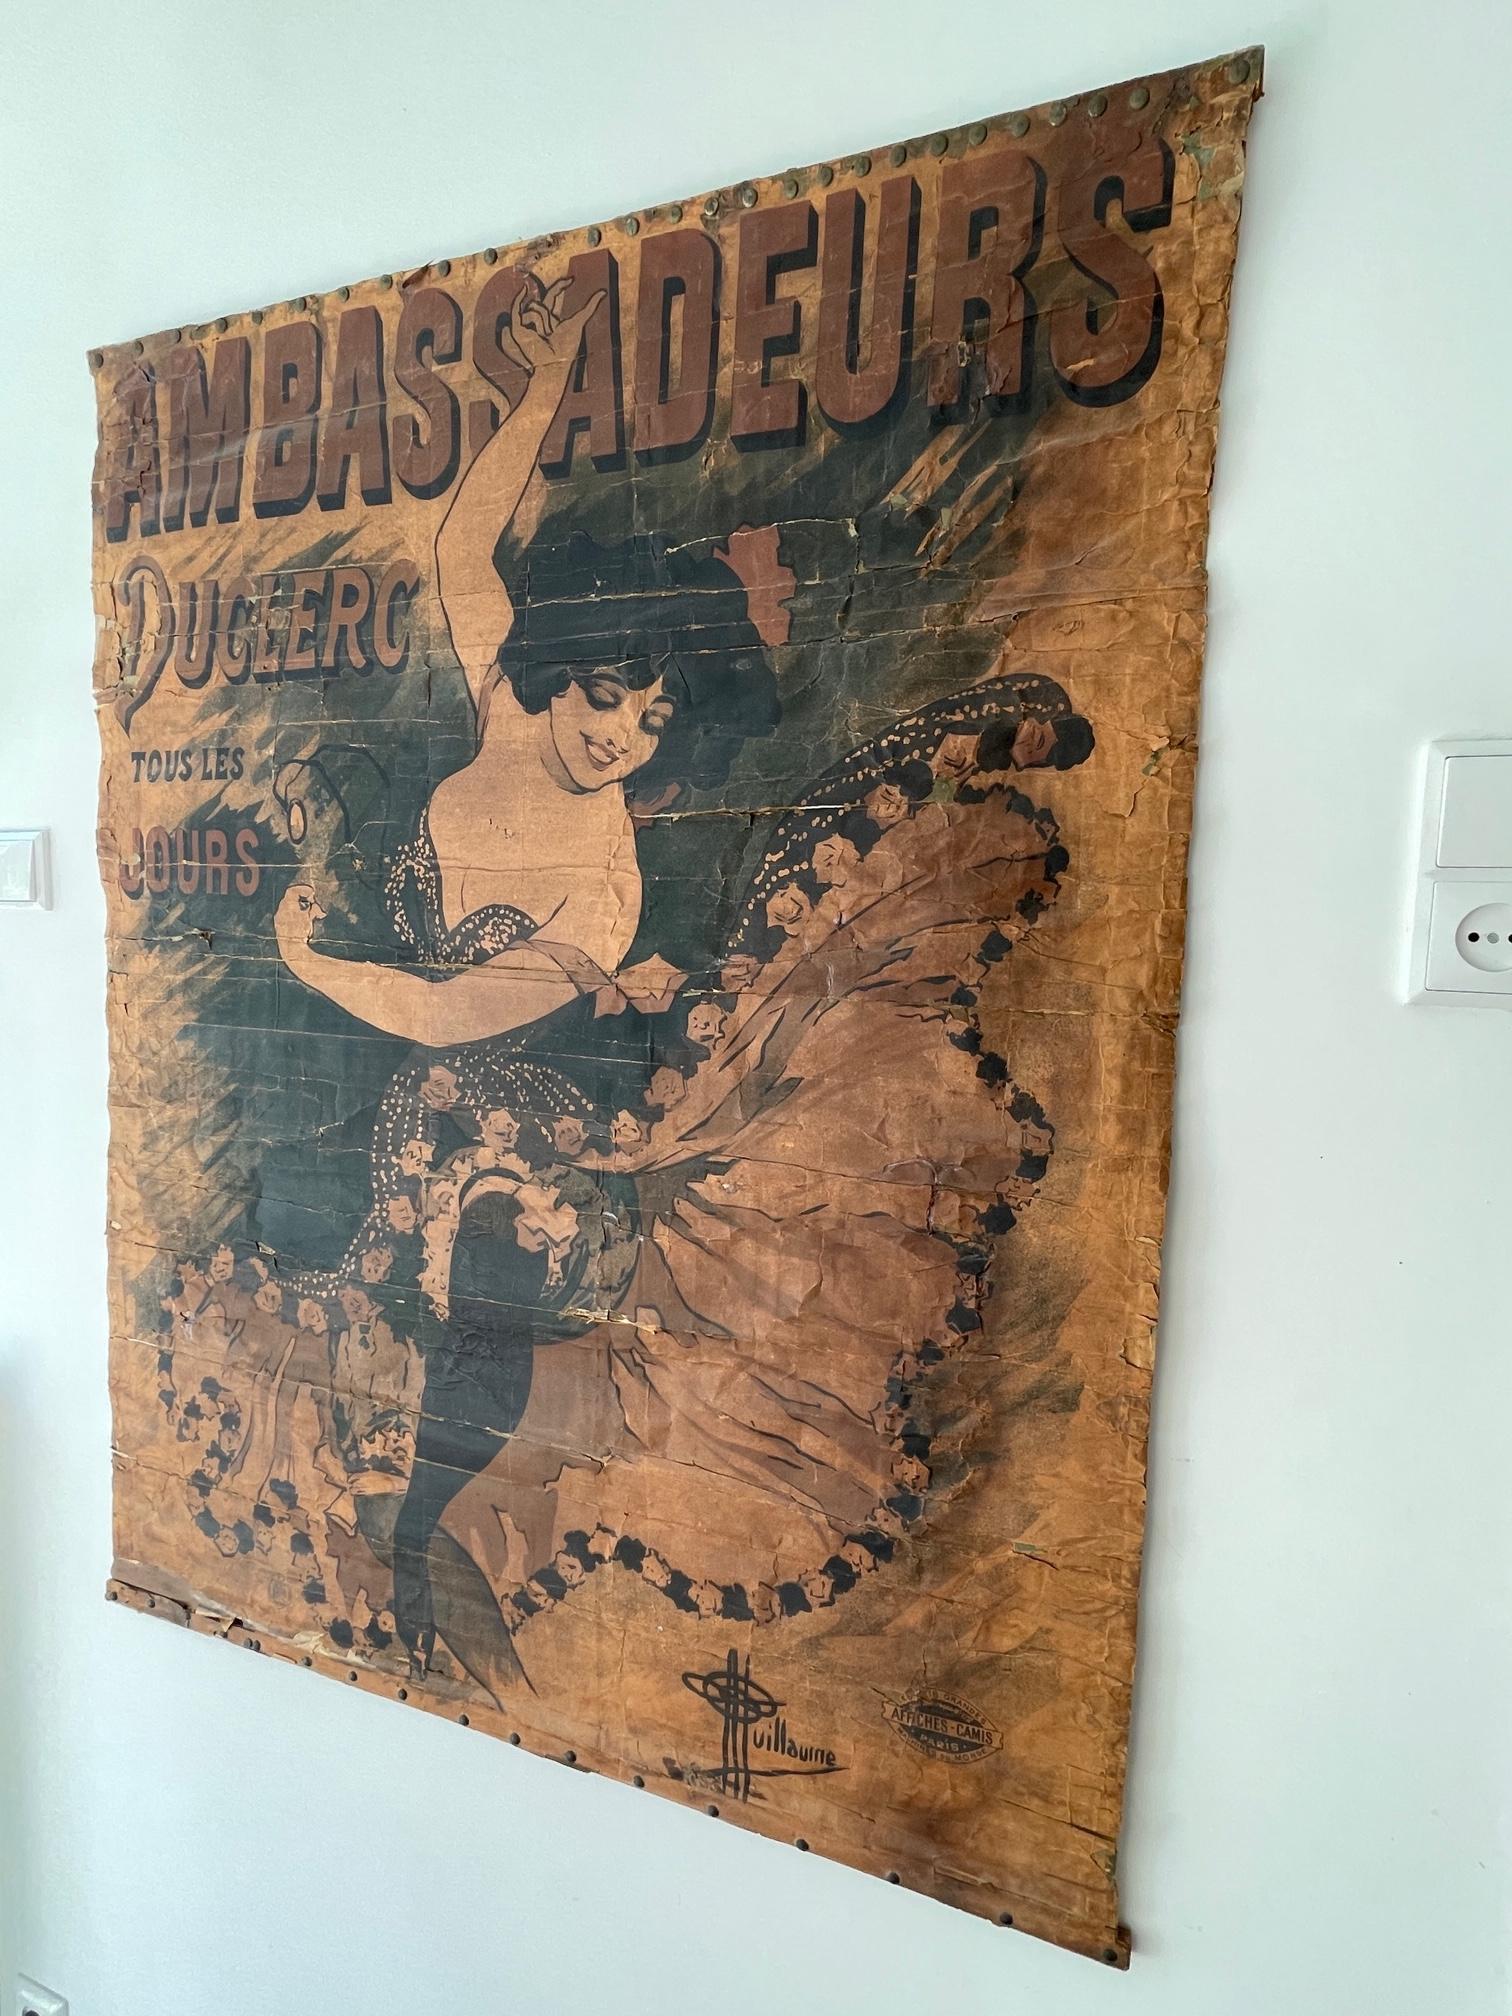 1894 Antique affiche / poster Ambassadeurs Duclerc tous les jours - Guillaume For Sale 2